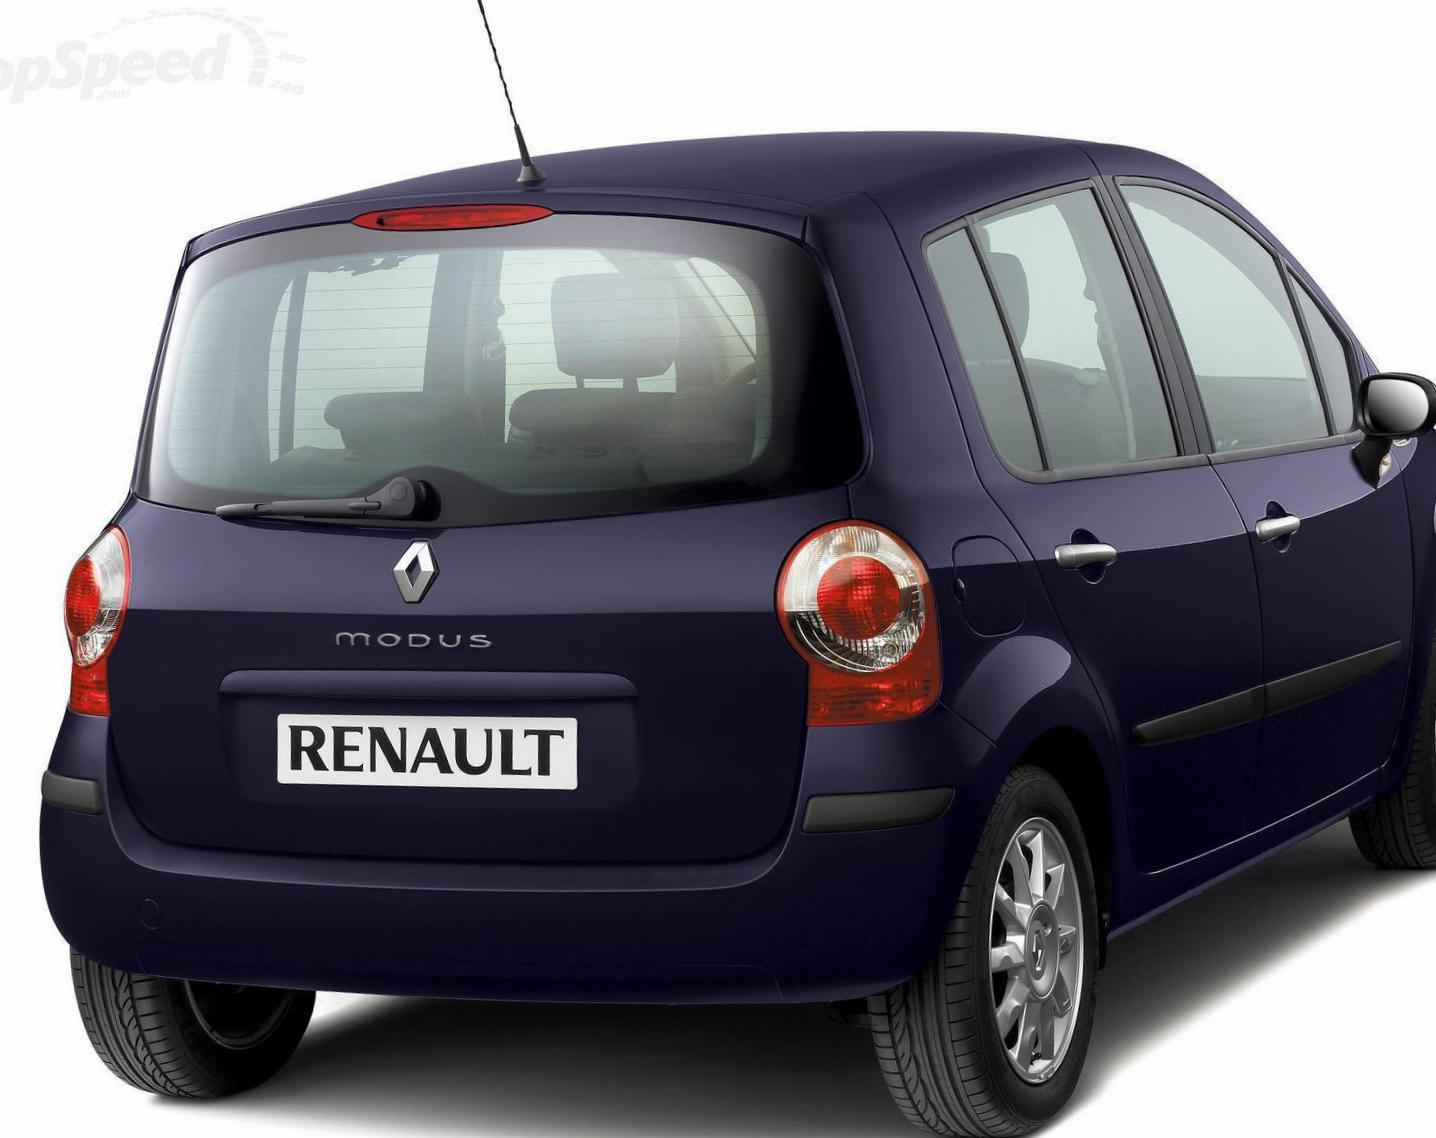 Renault Modus parts van